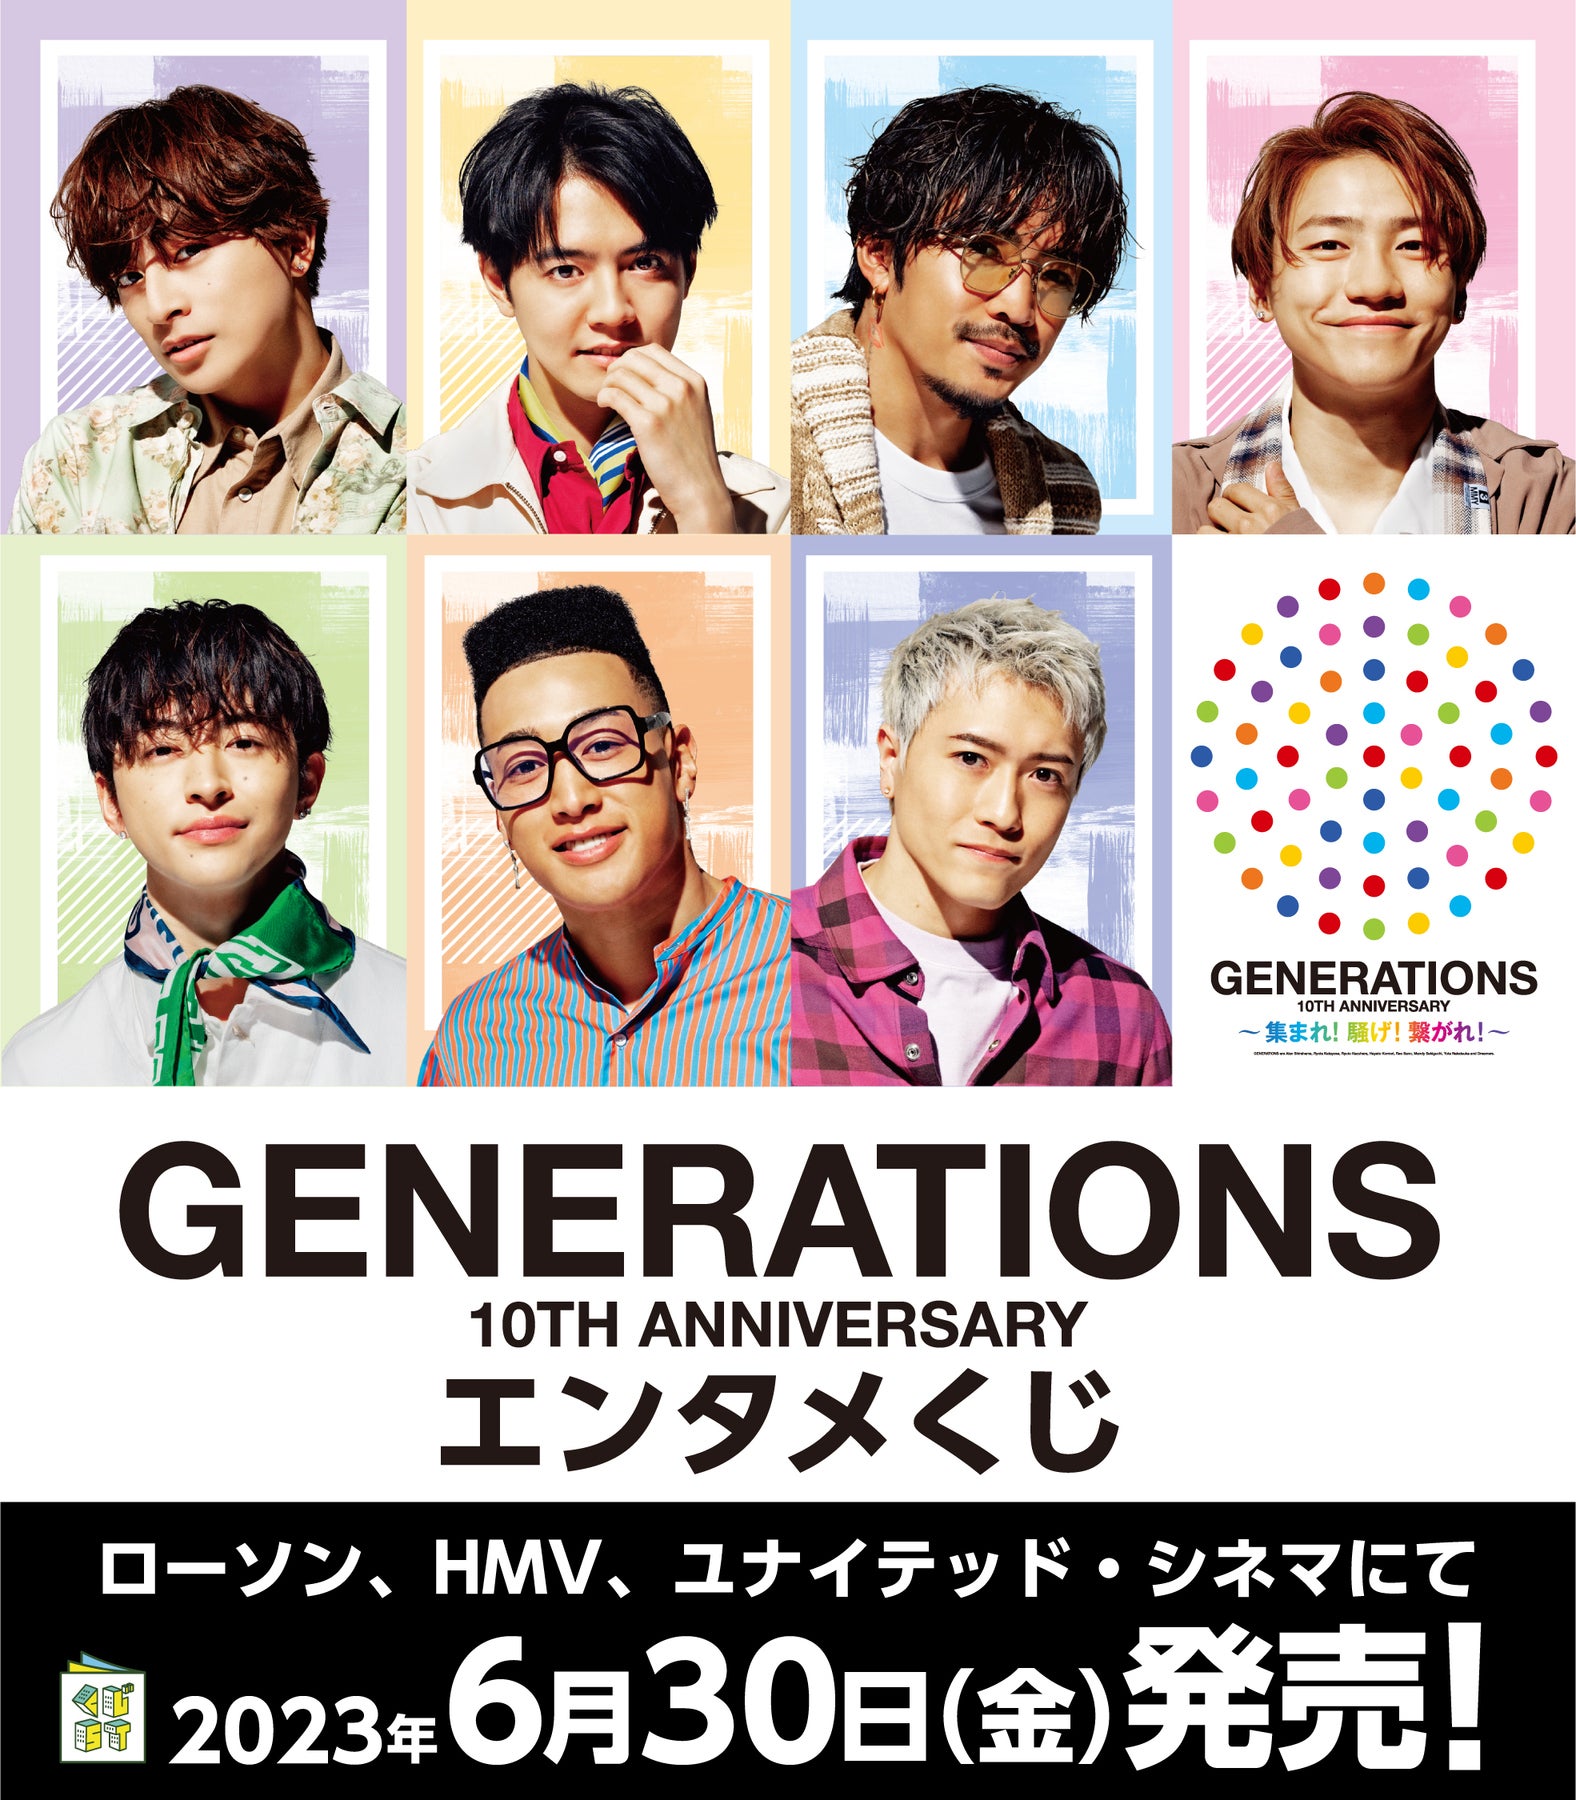 generations エンタメ ローソンくじ クッション | www.layer.co.il